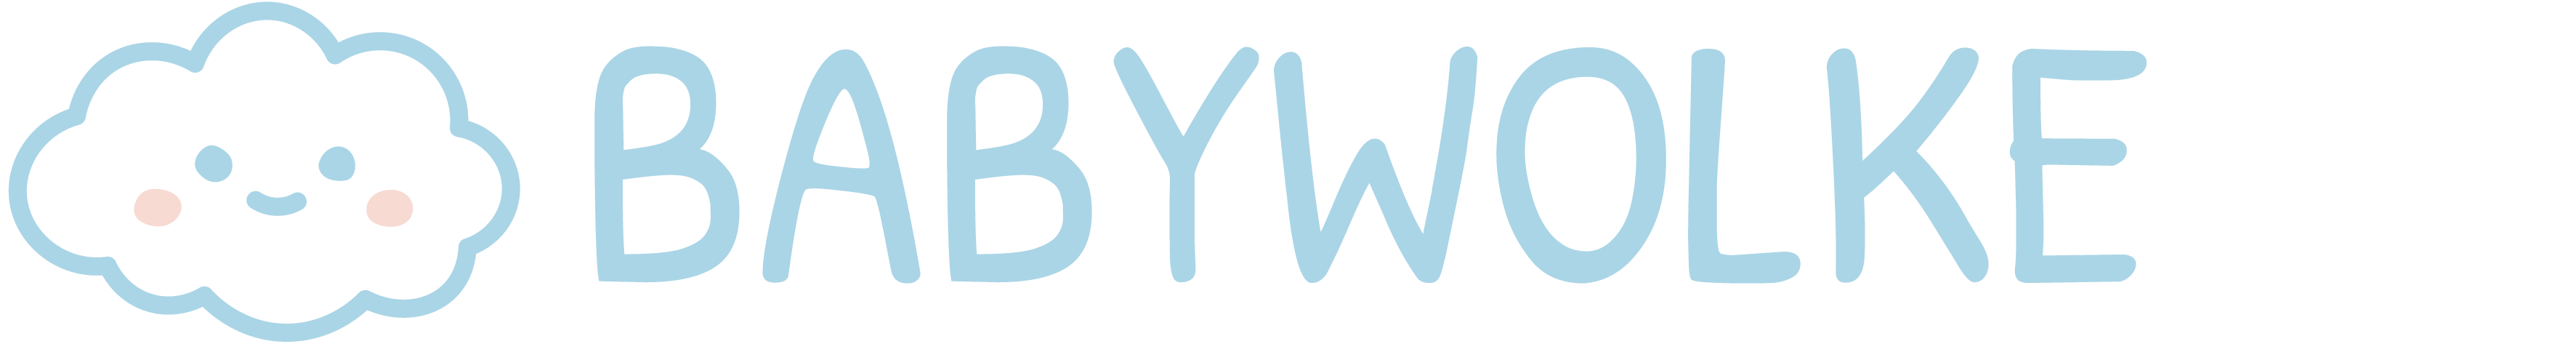 Babywolke.com Logo